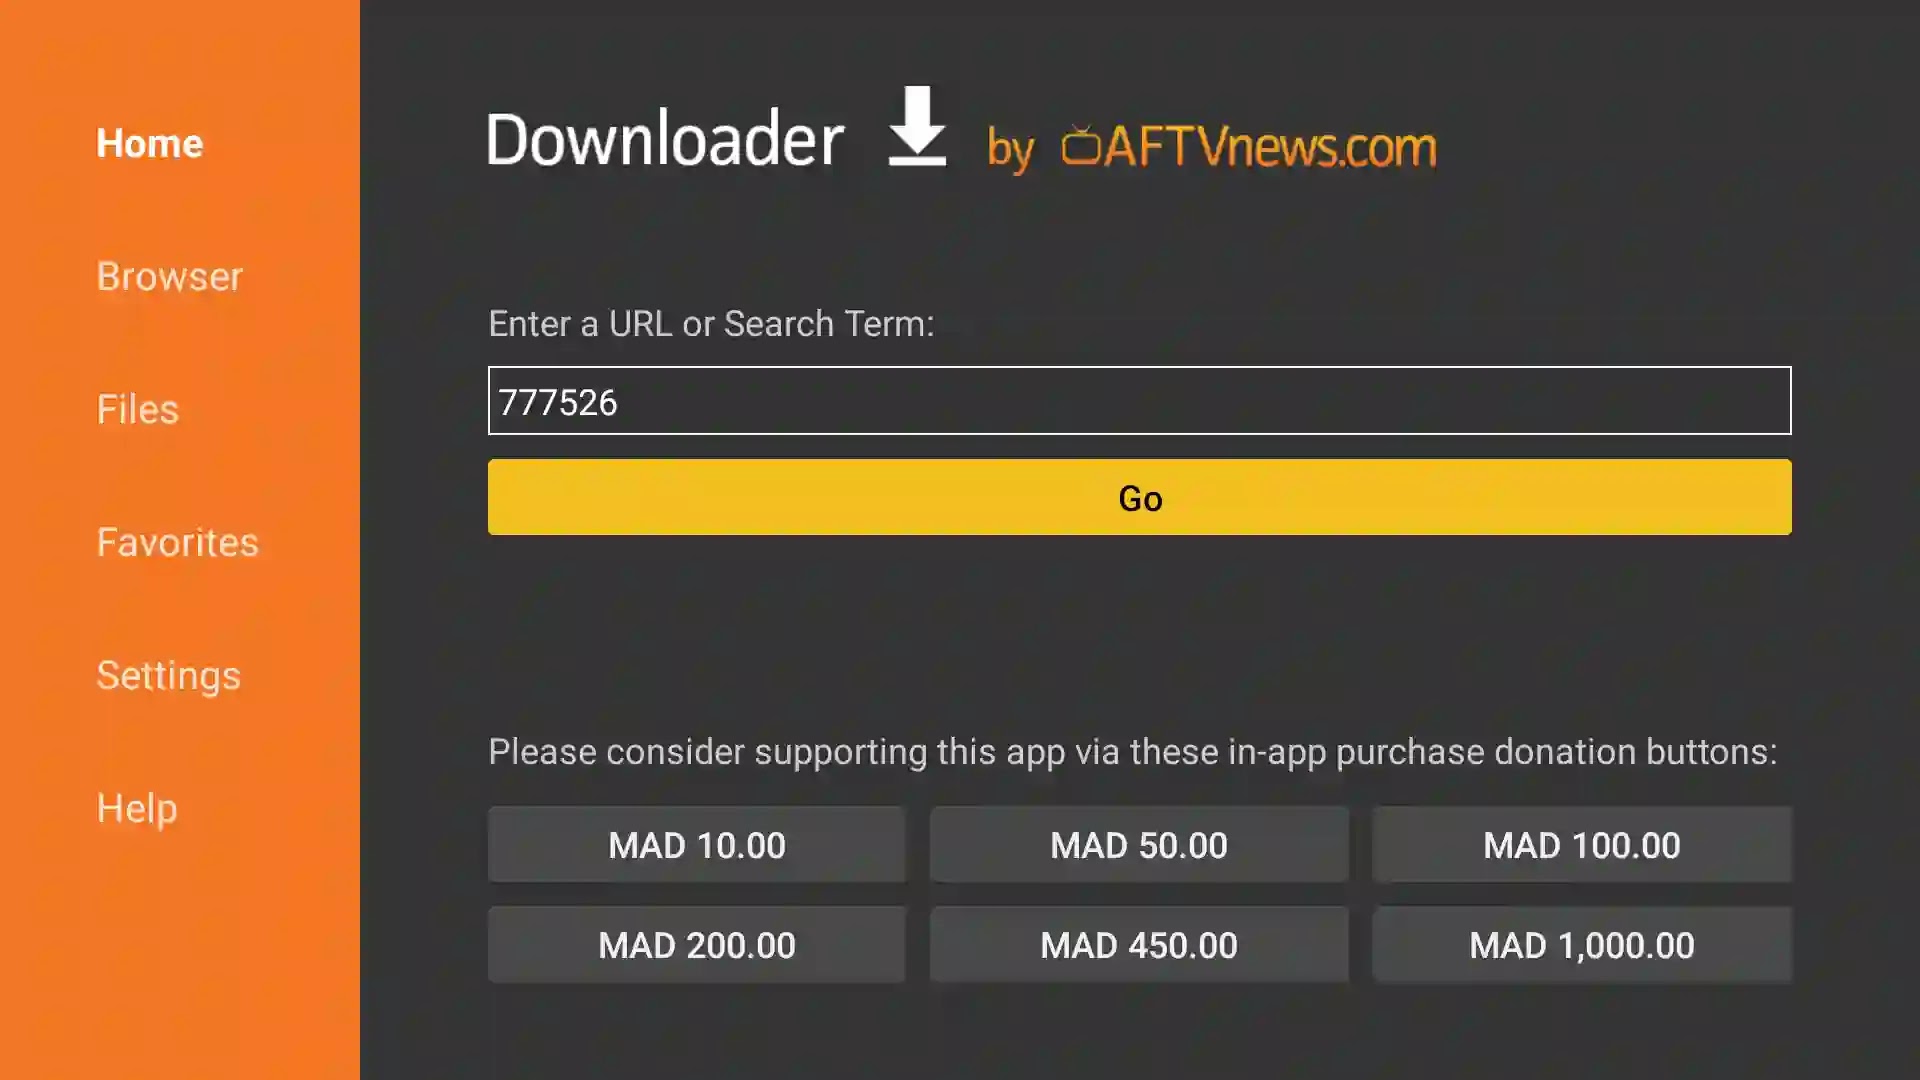 رمز تحميل تطبيق ytvplayer على Downloder:هو 777526